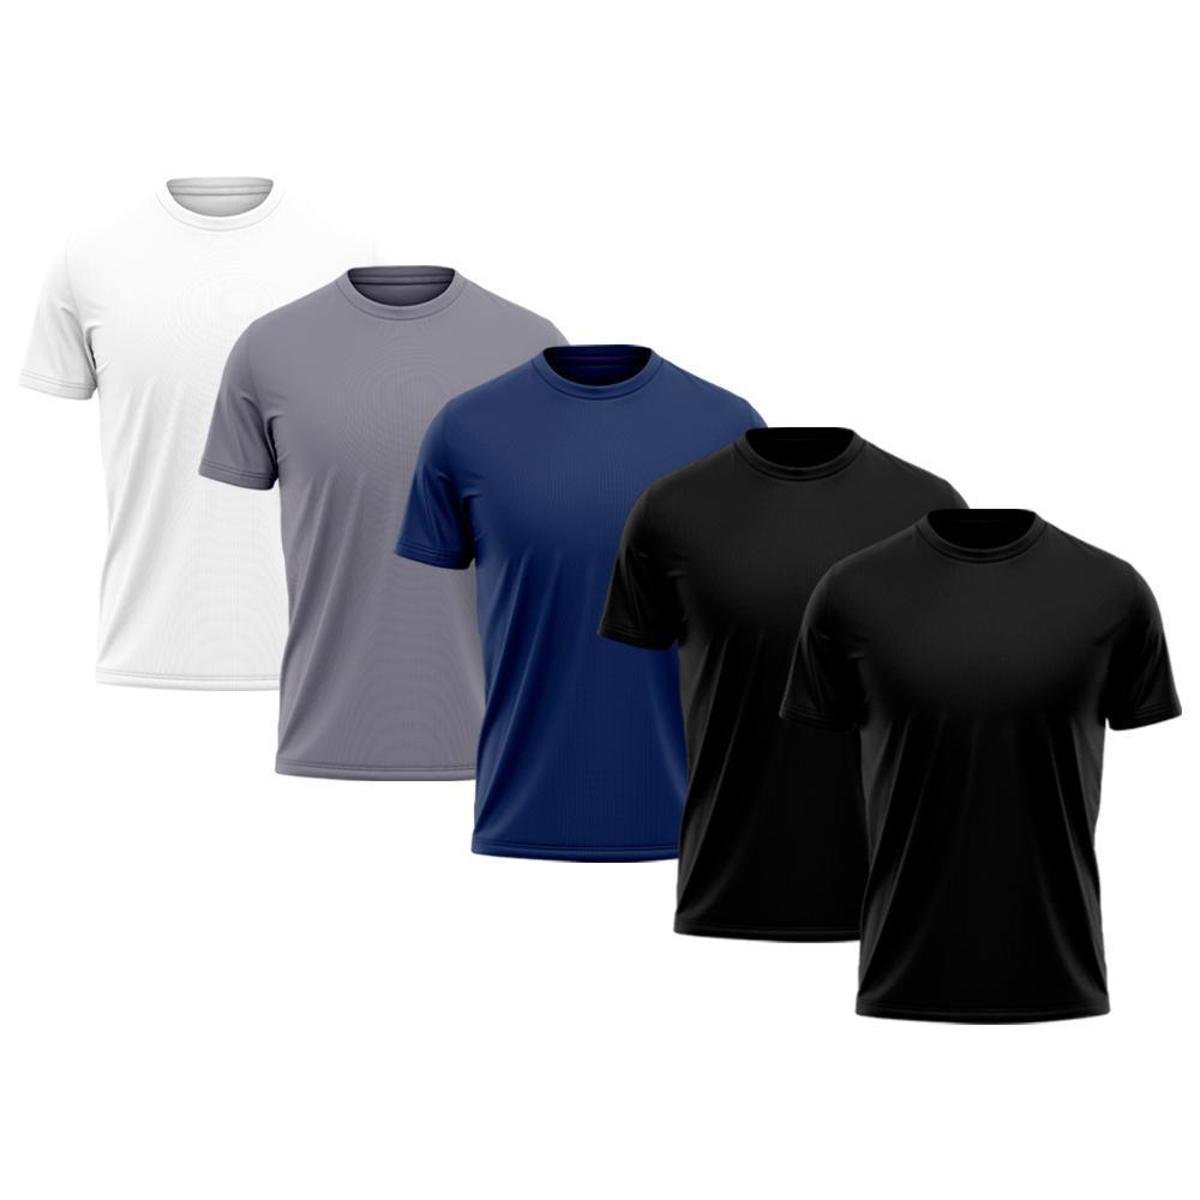 Kit 5 Camiseta Dry com Proteção UV - Masculina